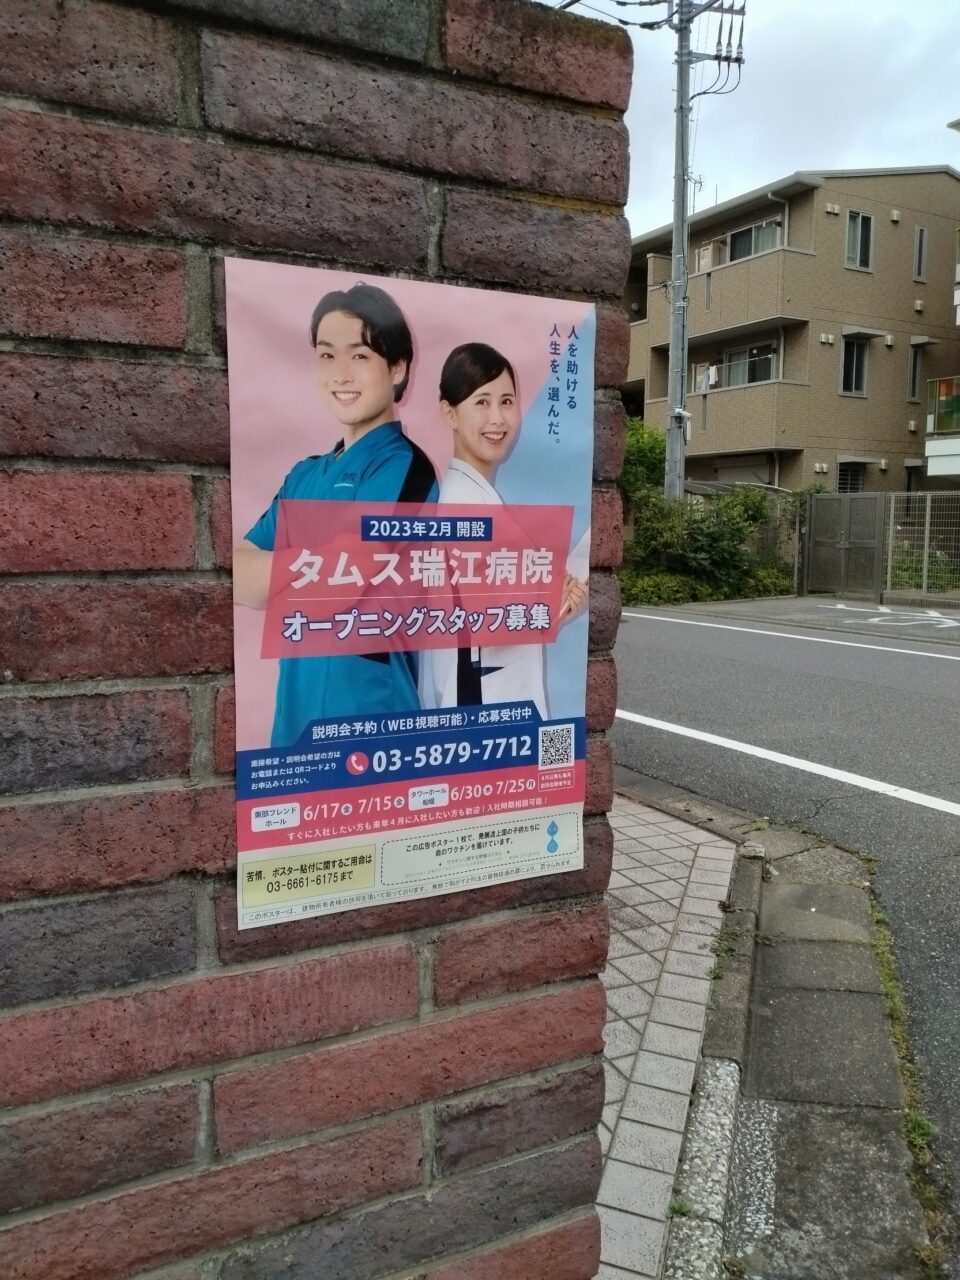 江戸川区内にポスター掲示しています☺